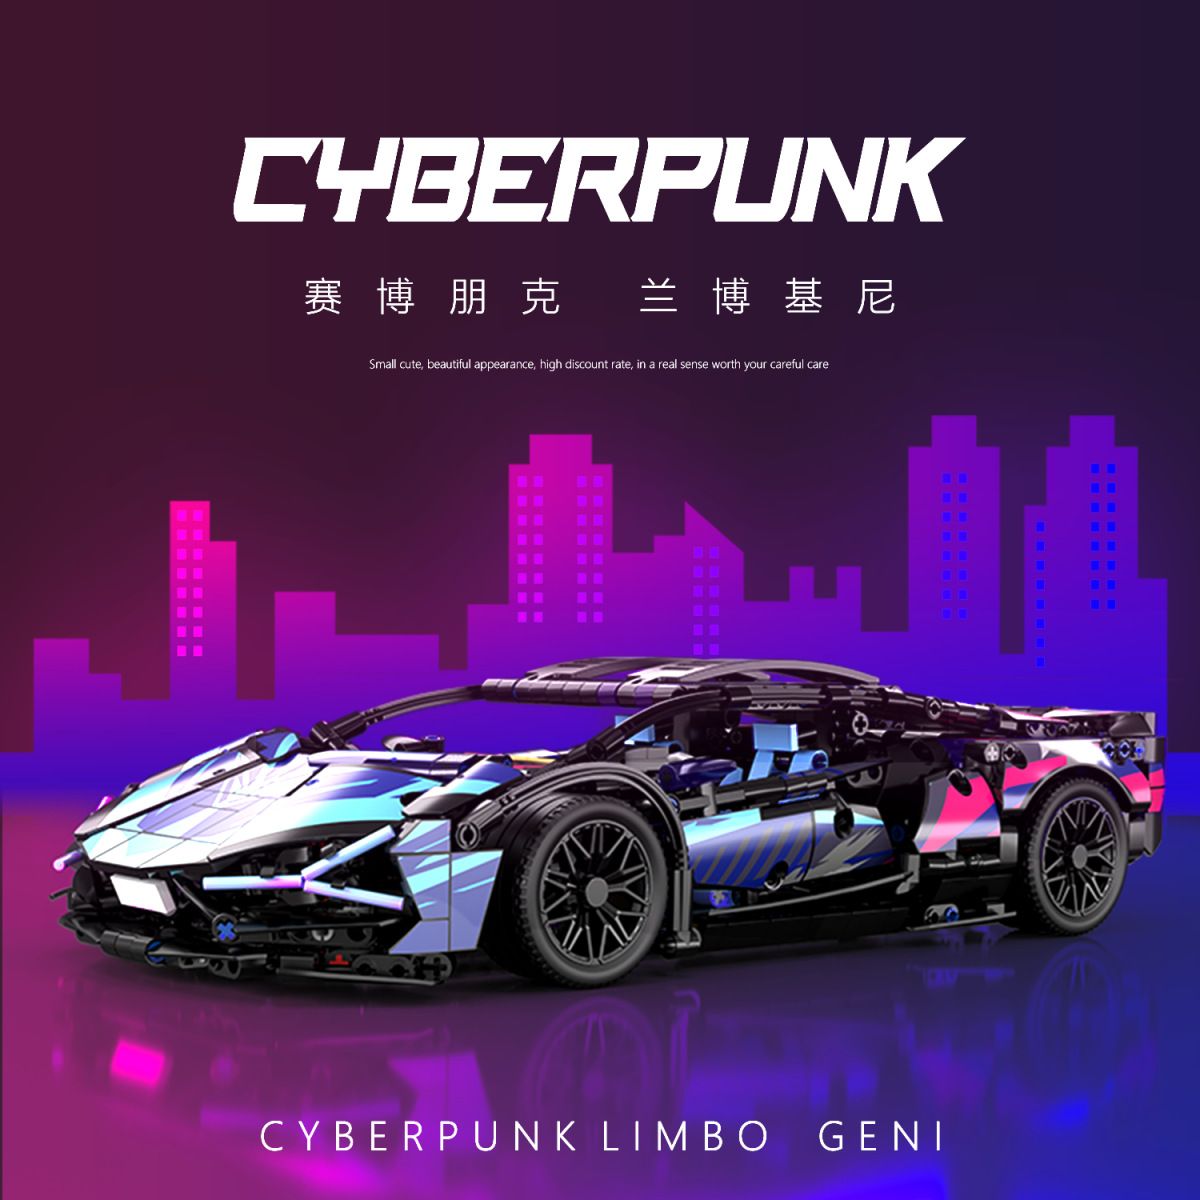  Mô hình xe ô tô lắp ghép Lamborghini CyberPunk galaxy 1314pcs tỉ lệ 1:14 non lego LG021 